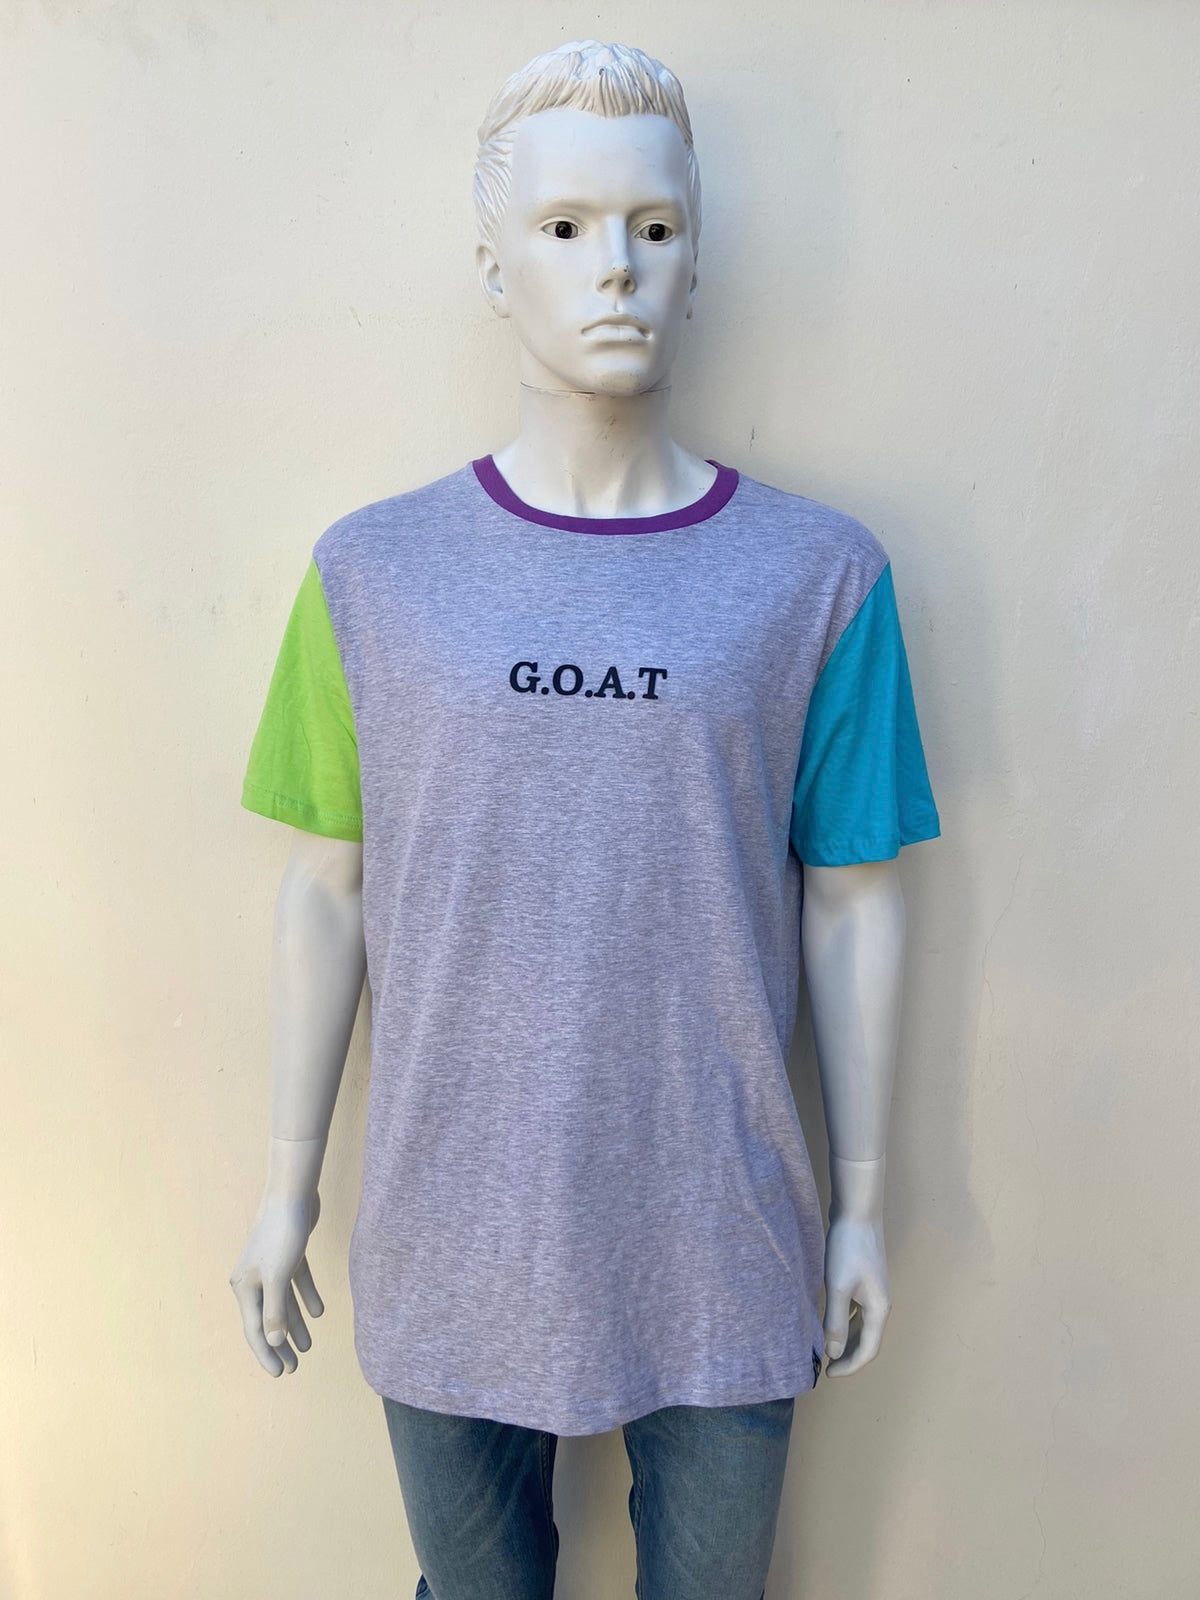 T-shirt W X Y Z original de color gris con manga derecha verde manga izquierda azul y cuello a color morado con letra G.O.A.T en negro al frente